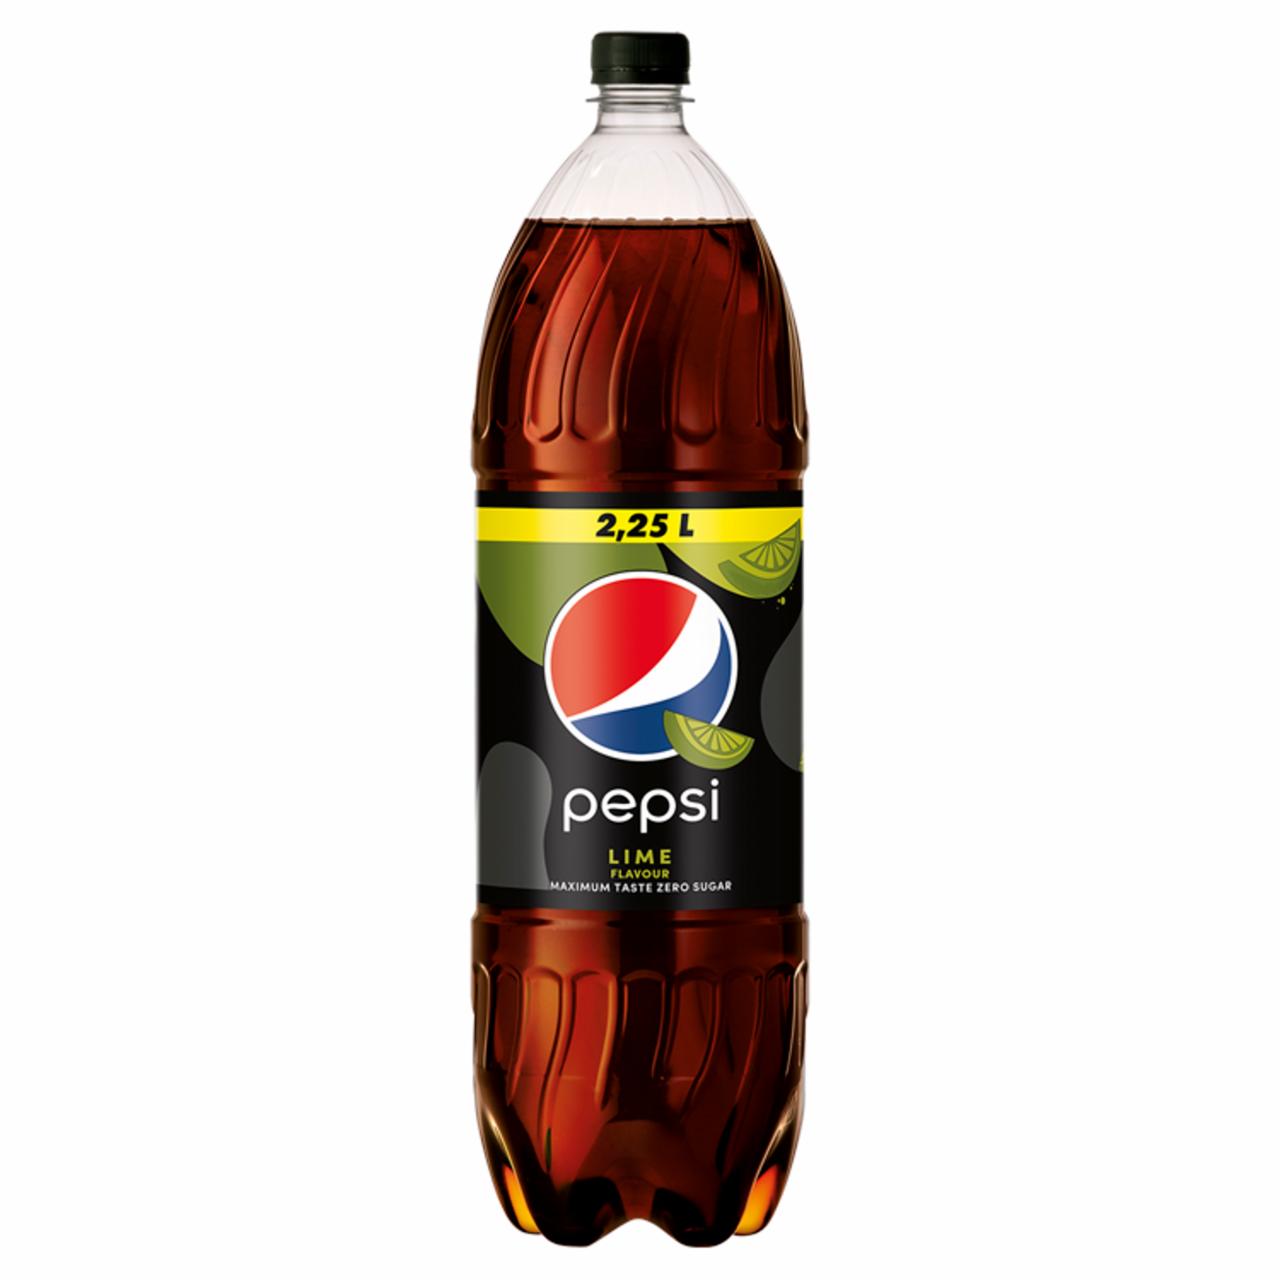 Képek - Pepsi Lime colaízű energiamentes szénsavas üdítőital édesítőszerekkel lime ízesítéssel 2,25 l